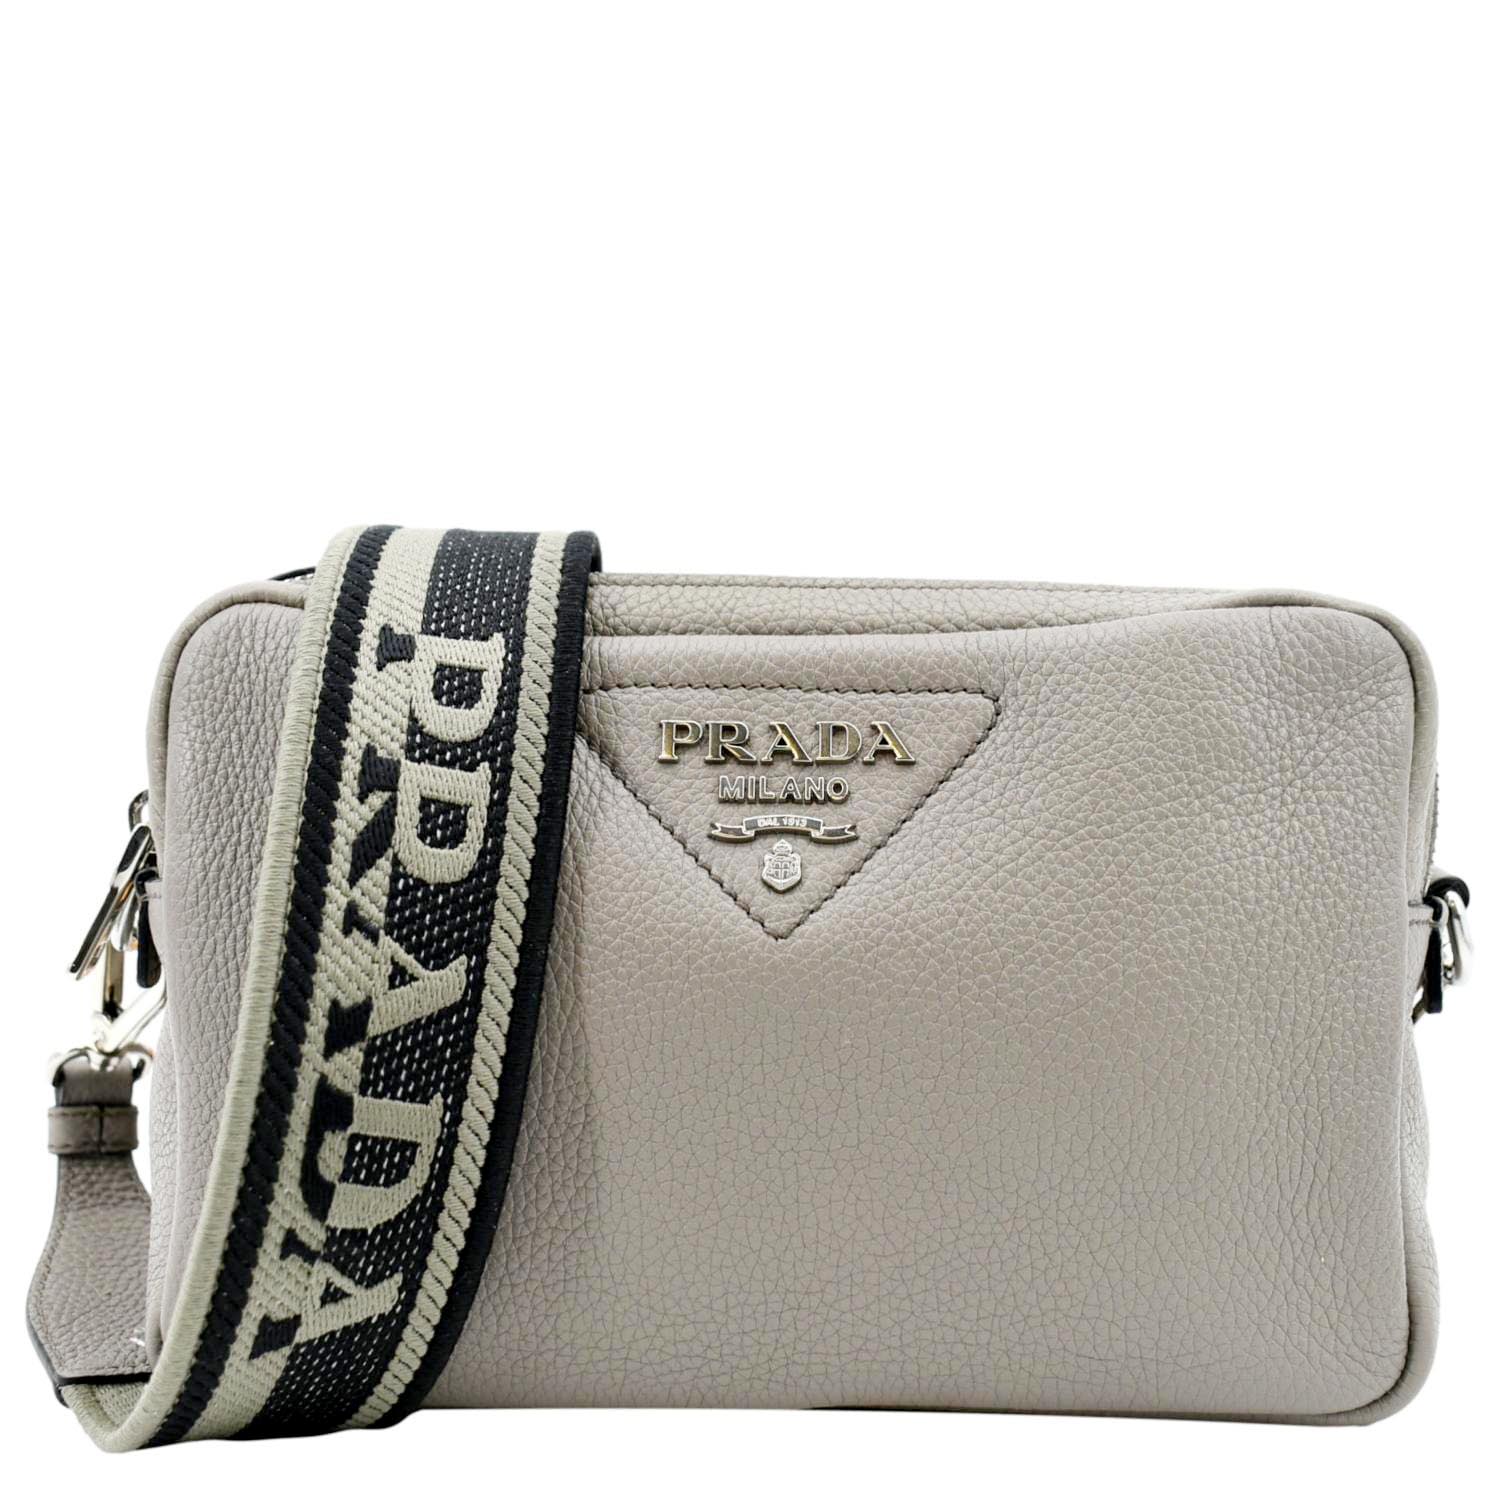 Prada Flou Tote Bag - White for Women